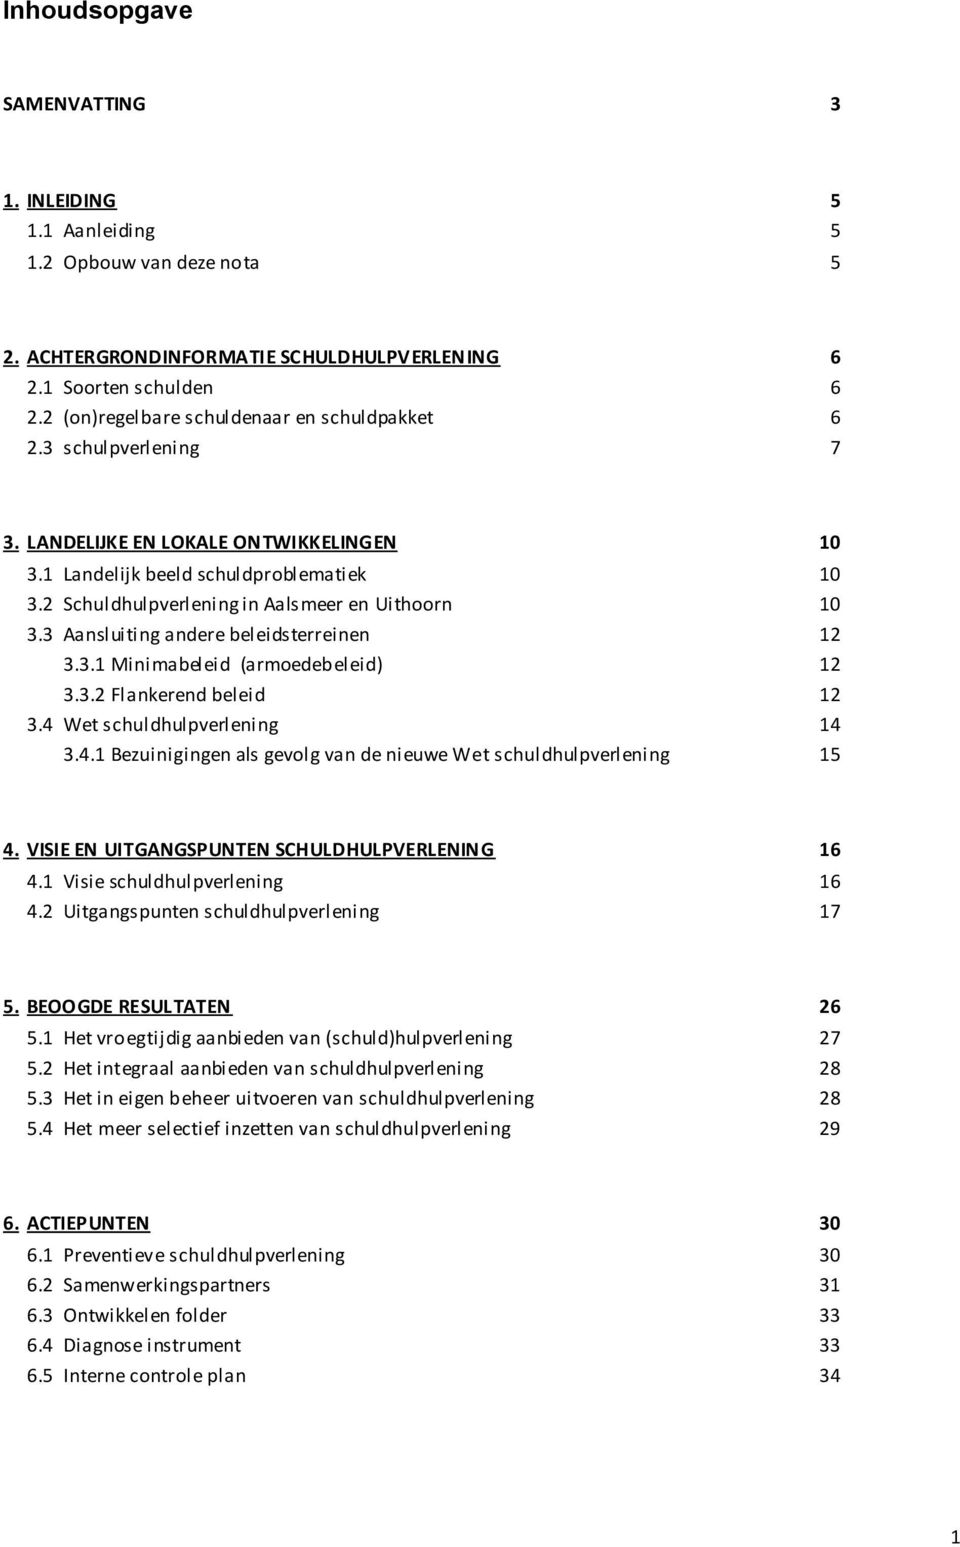 2 Schuldhulpverlening in Aalsmeer en Uithoorn 10 3.3 Aansluiting andere beleidsterreinen 12 3.3.1 Minimabeleid (armoedeb eleid) 12 3.3.2 Flankerend beleid 12 3.4 